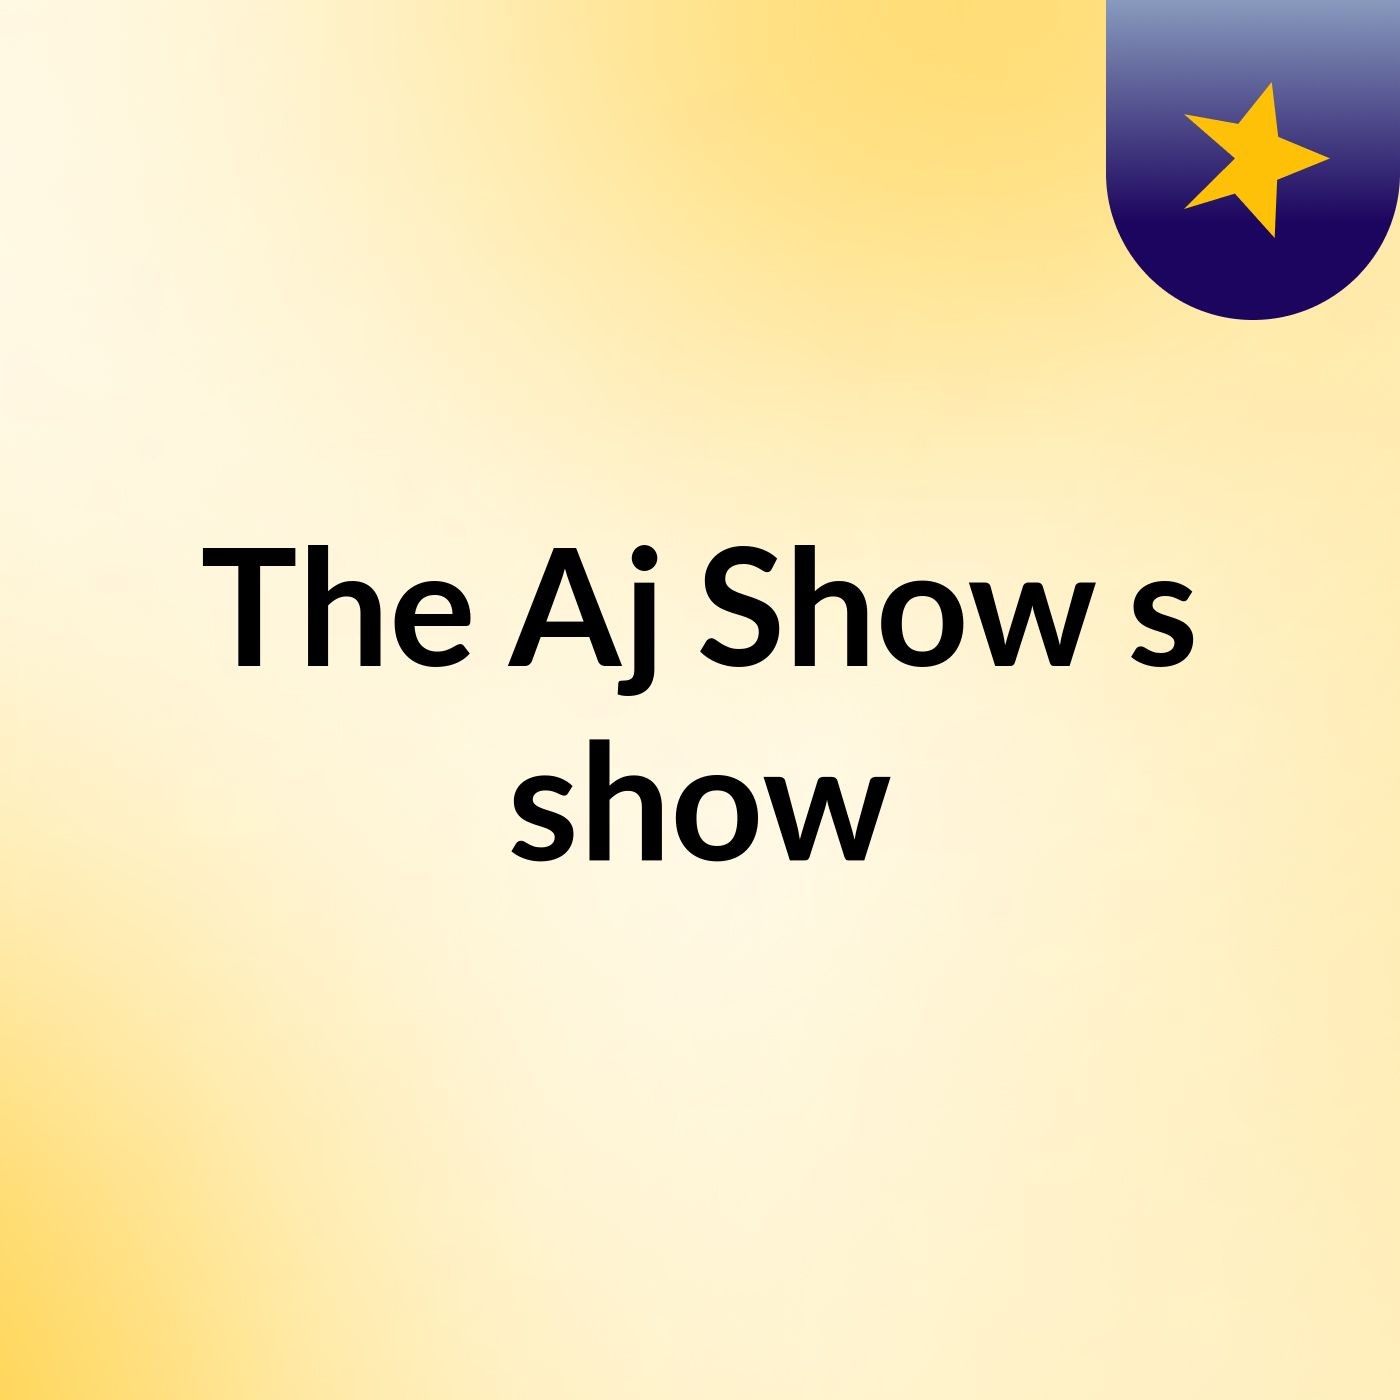 Episode 3 - The Aj Show